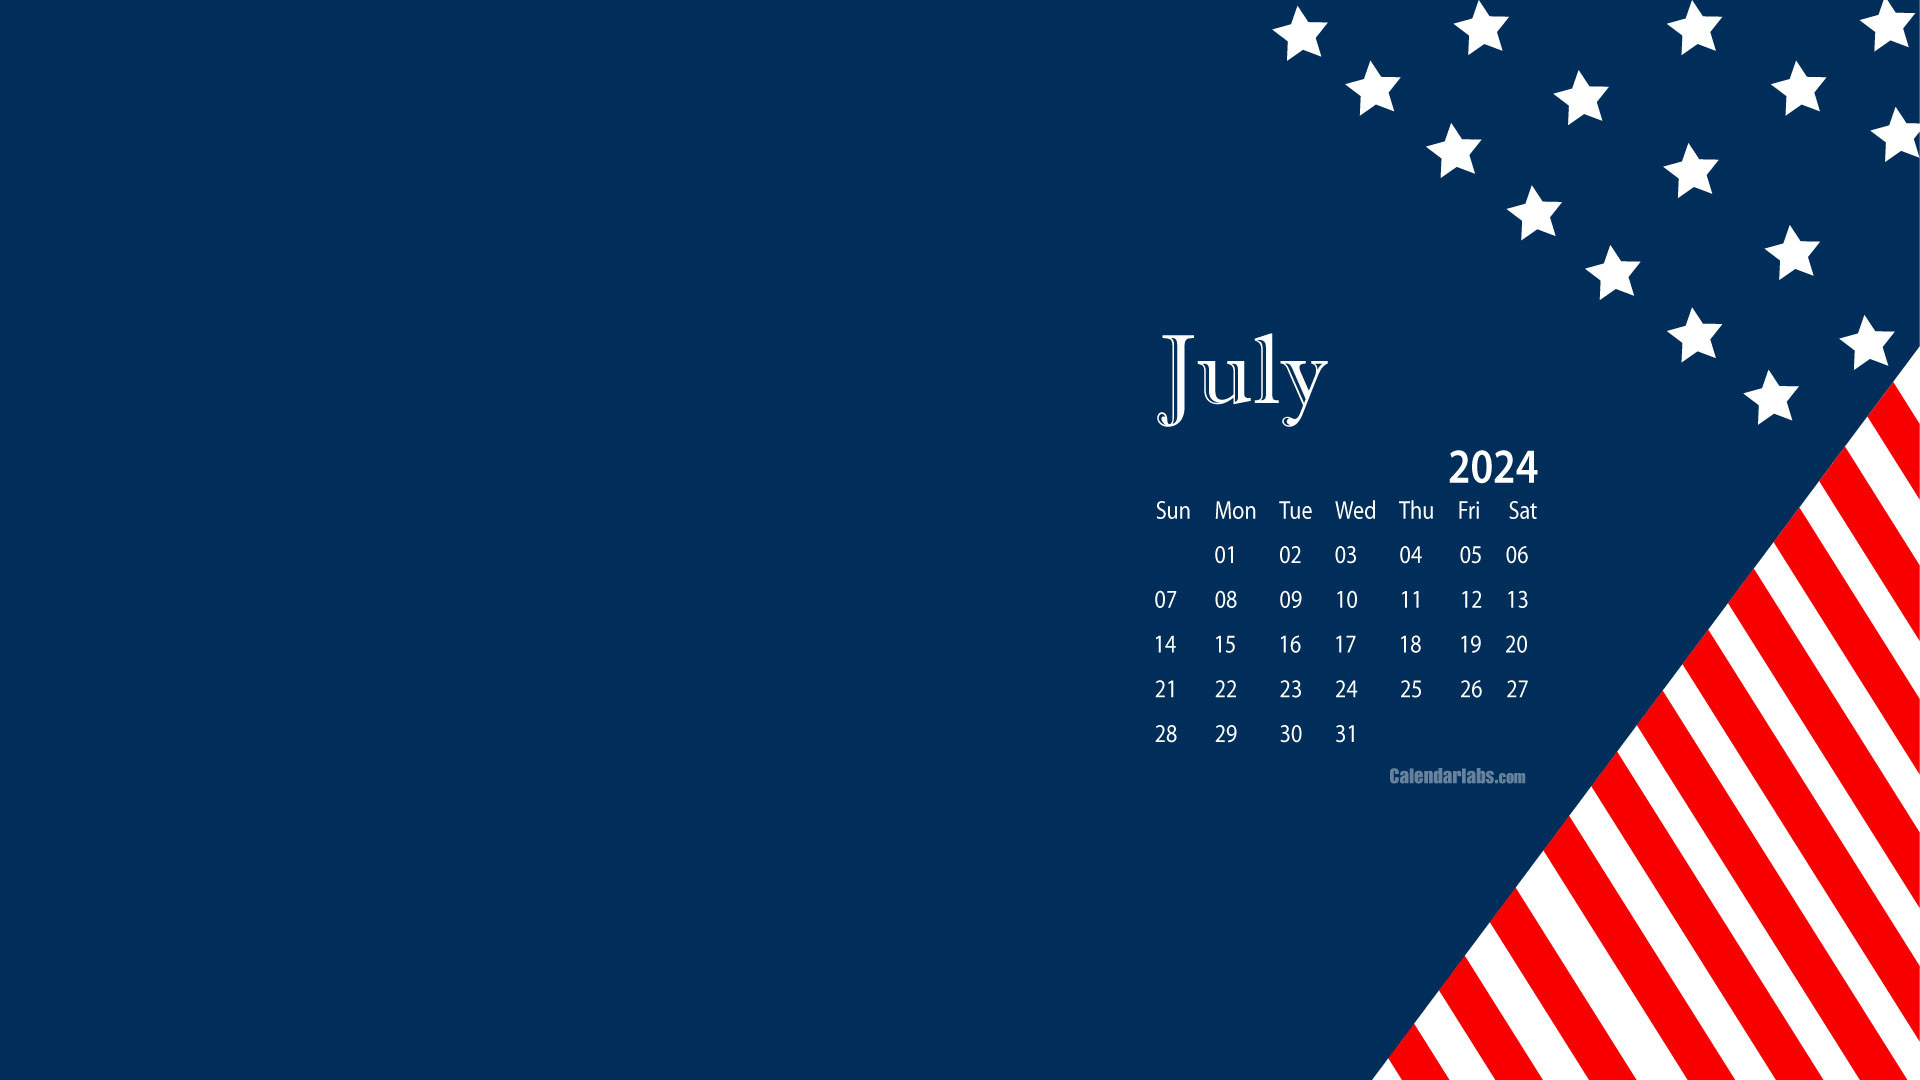 July 2024 Desktop Wallpaper Calendar - Calendarlabs inside July 2024 Calendar Wallpaper Desktop